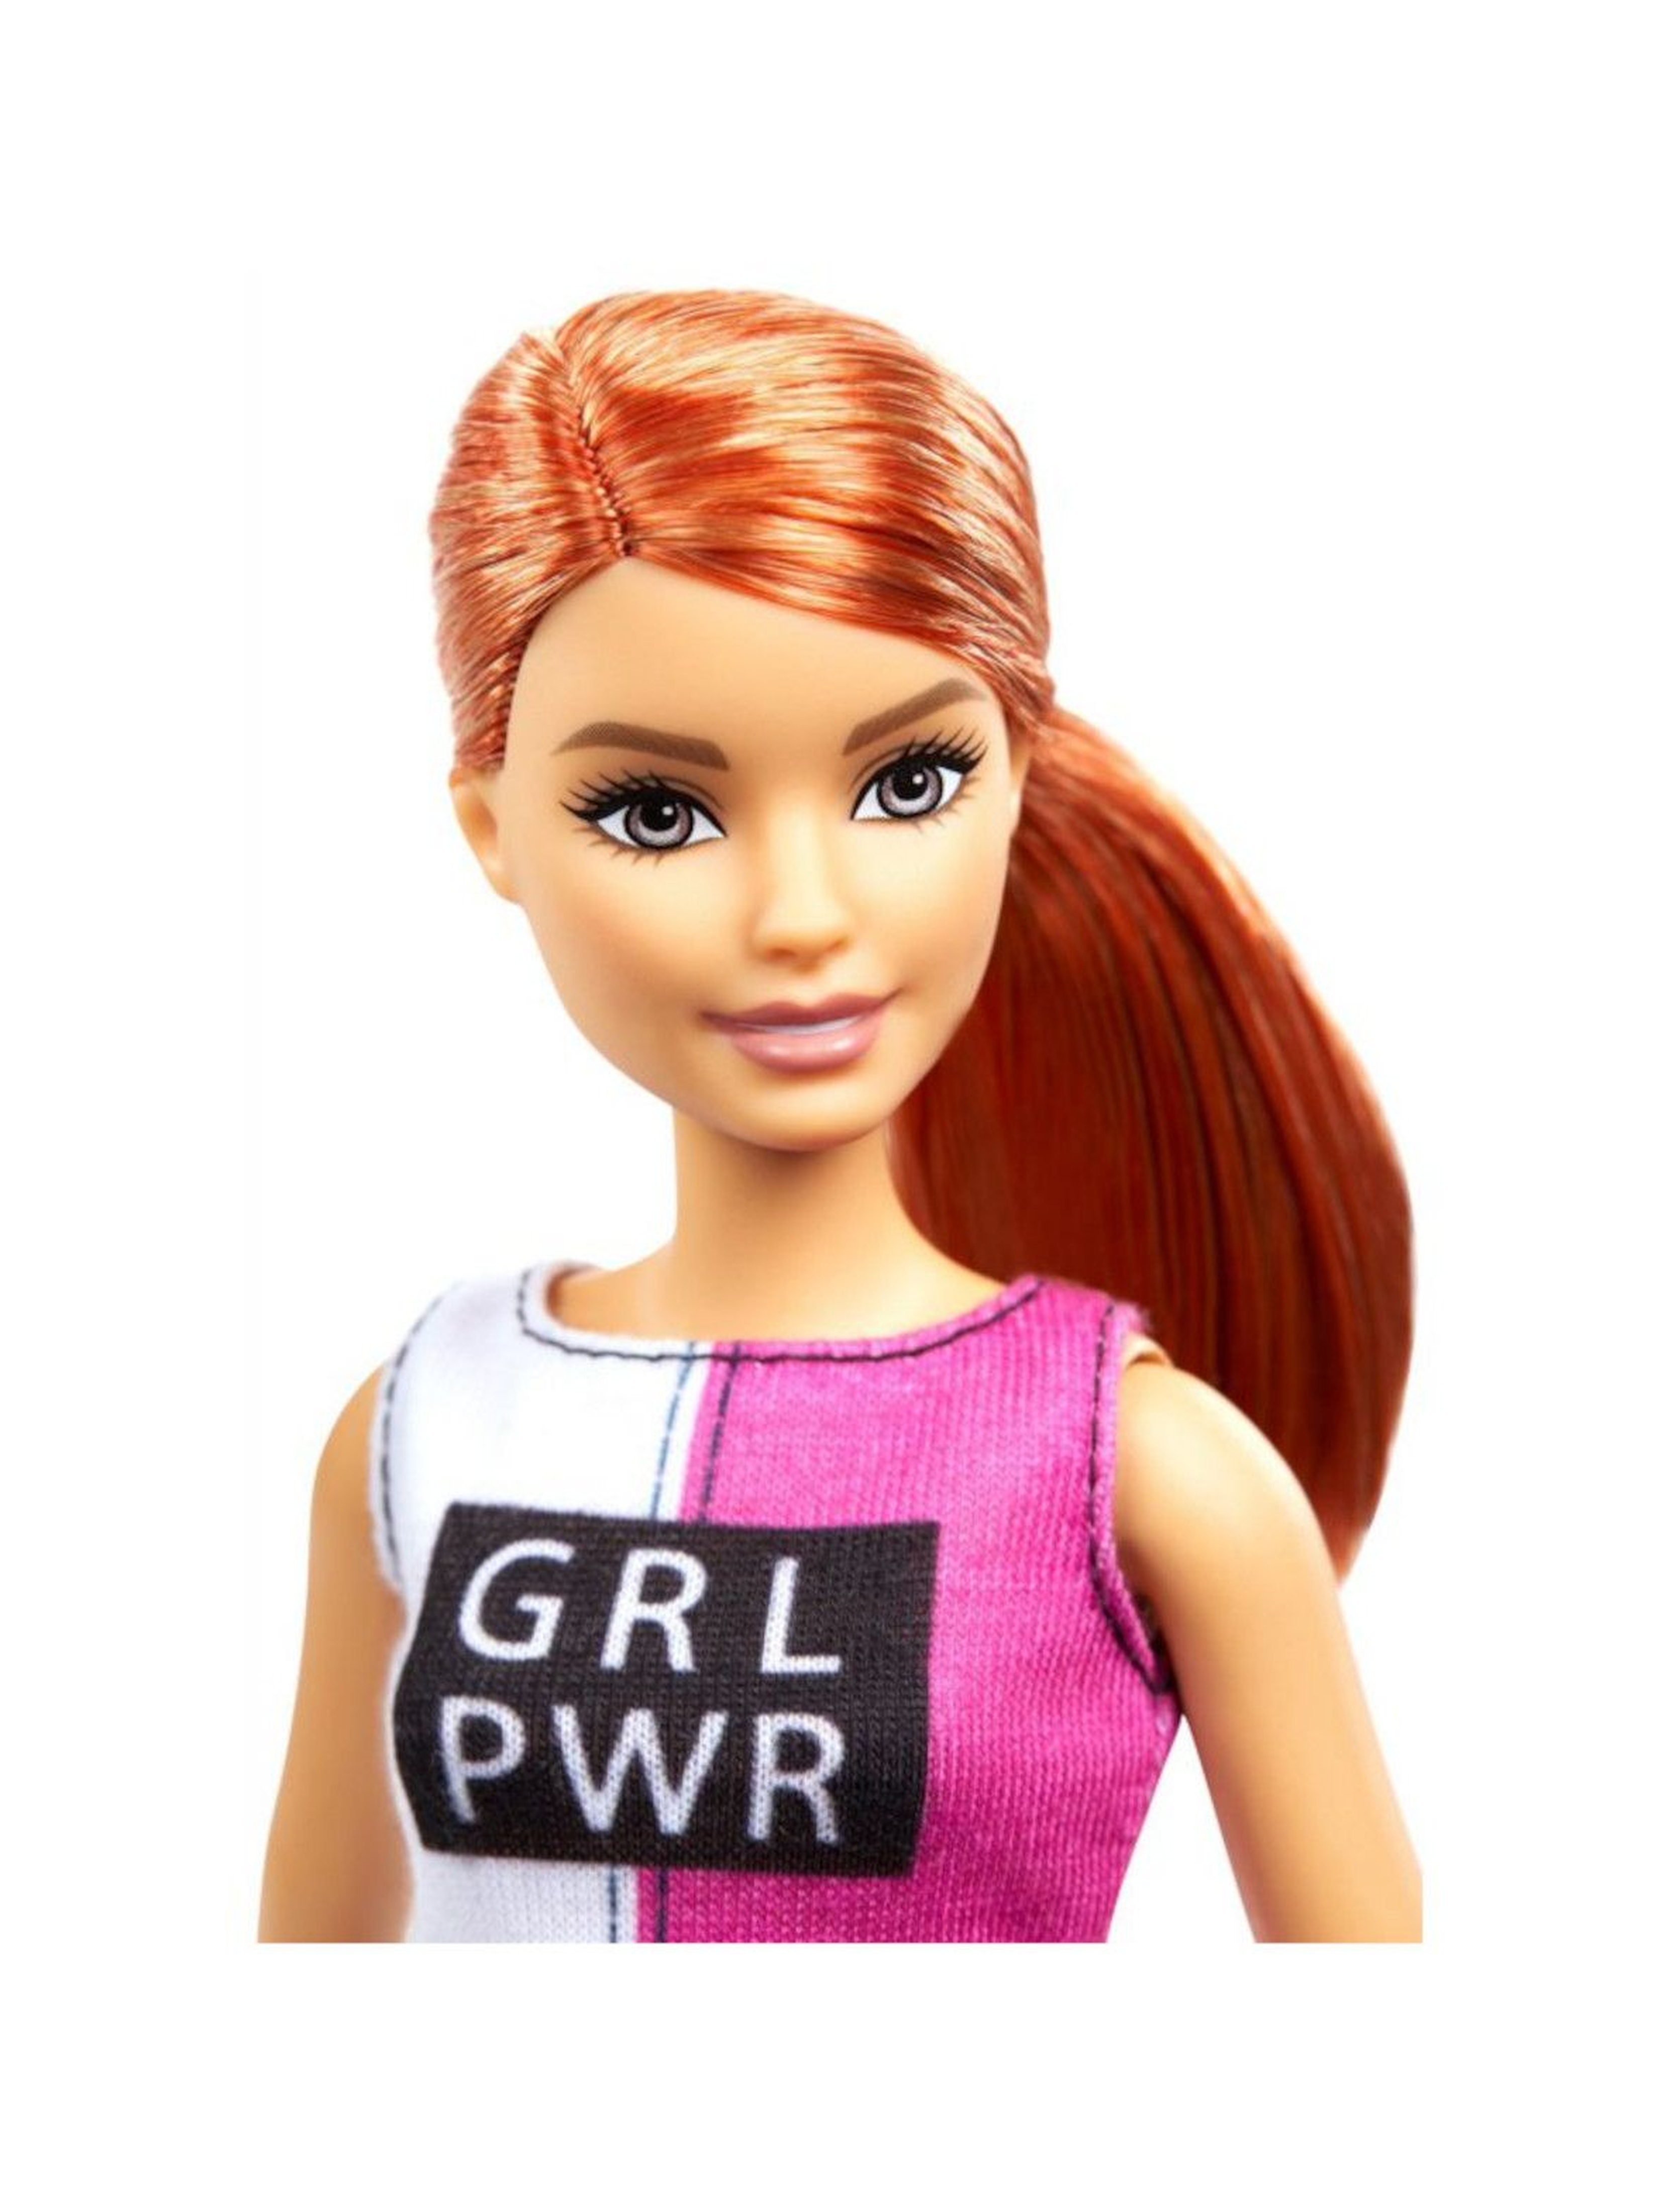 Barbie - Zestaw Relaks na siłowni Lalka z pieskiem i akcesoria wiek 3+